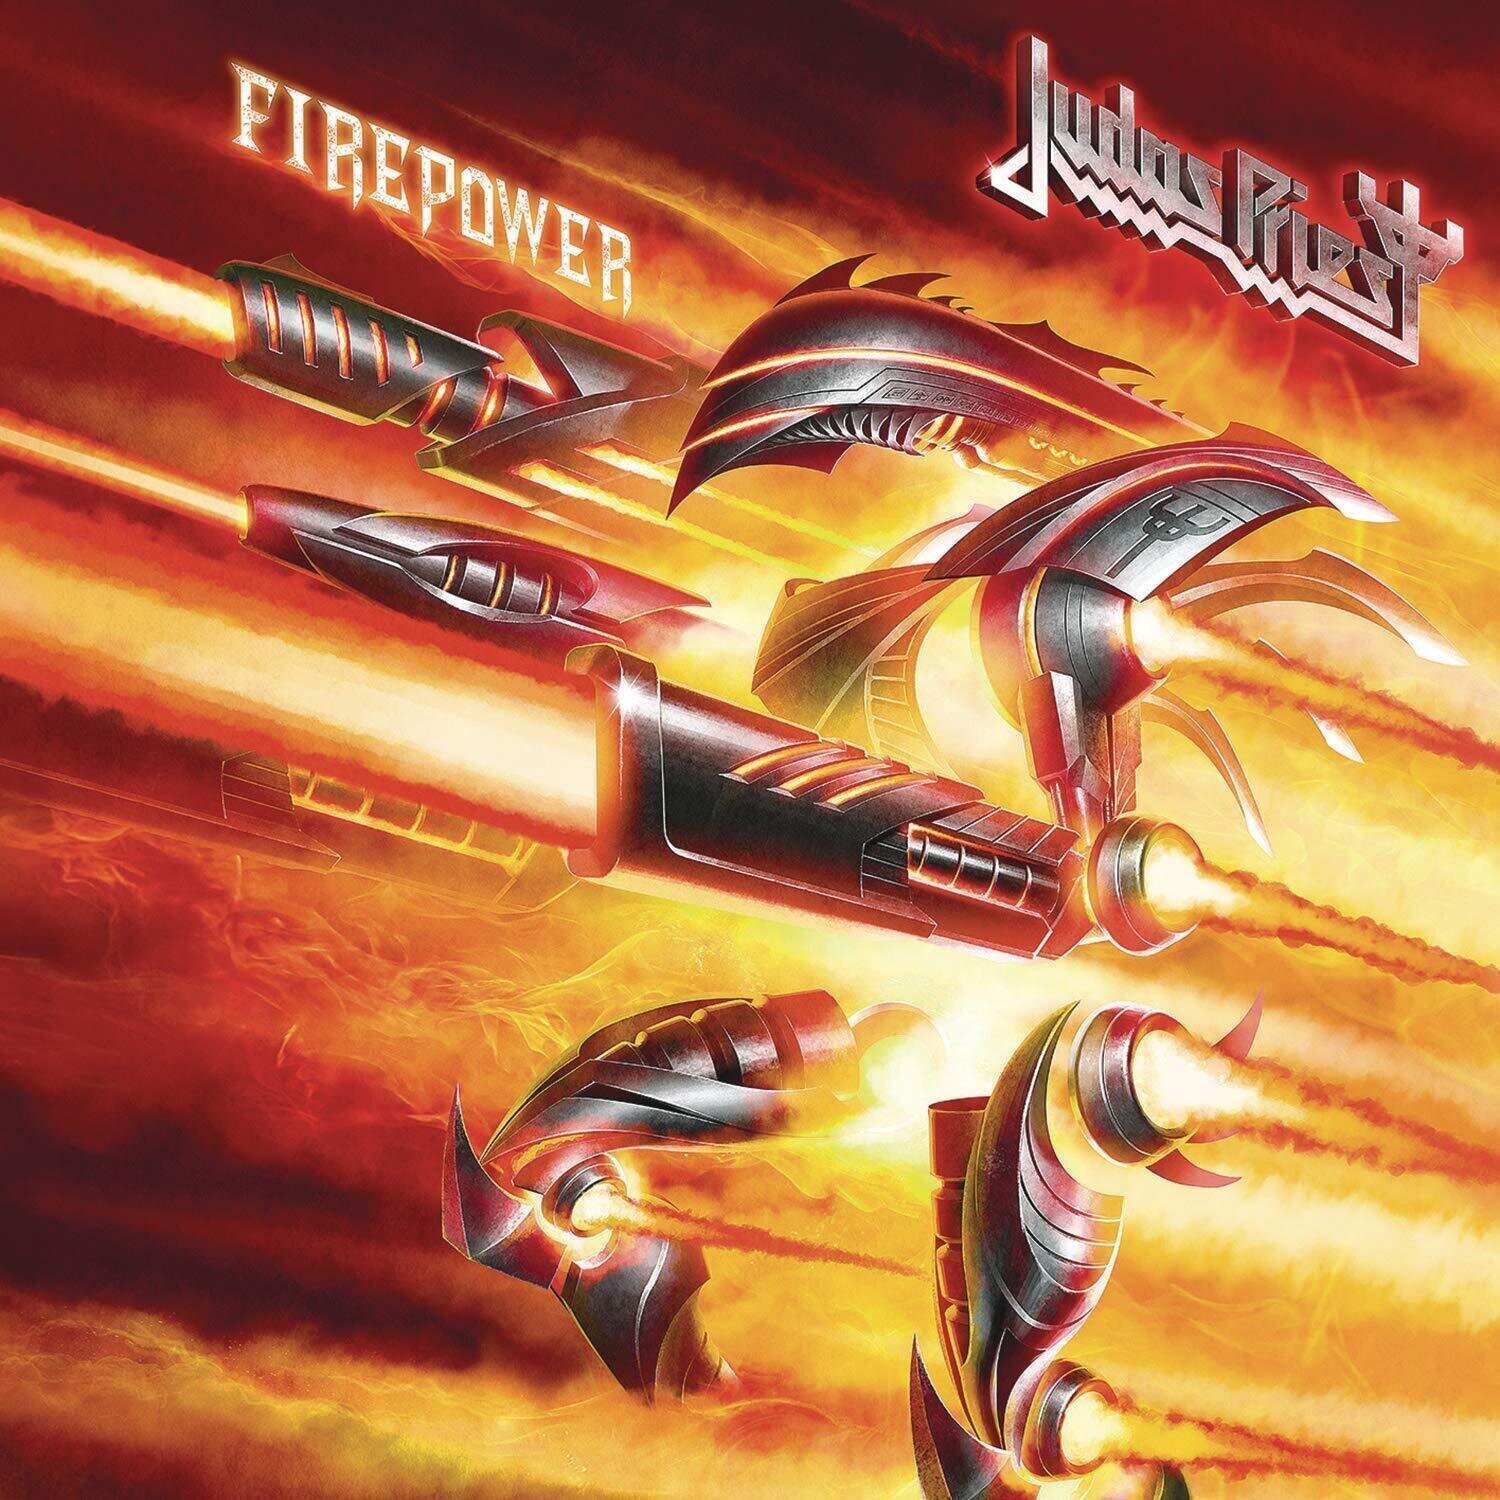 Music CD Judas Priest - Firepower (CD)